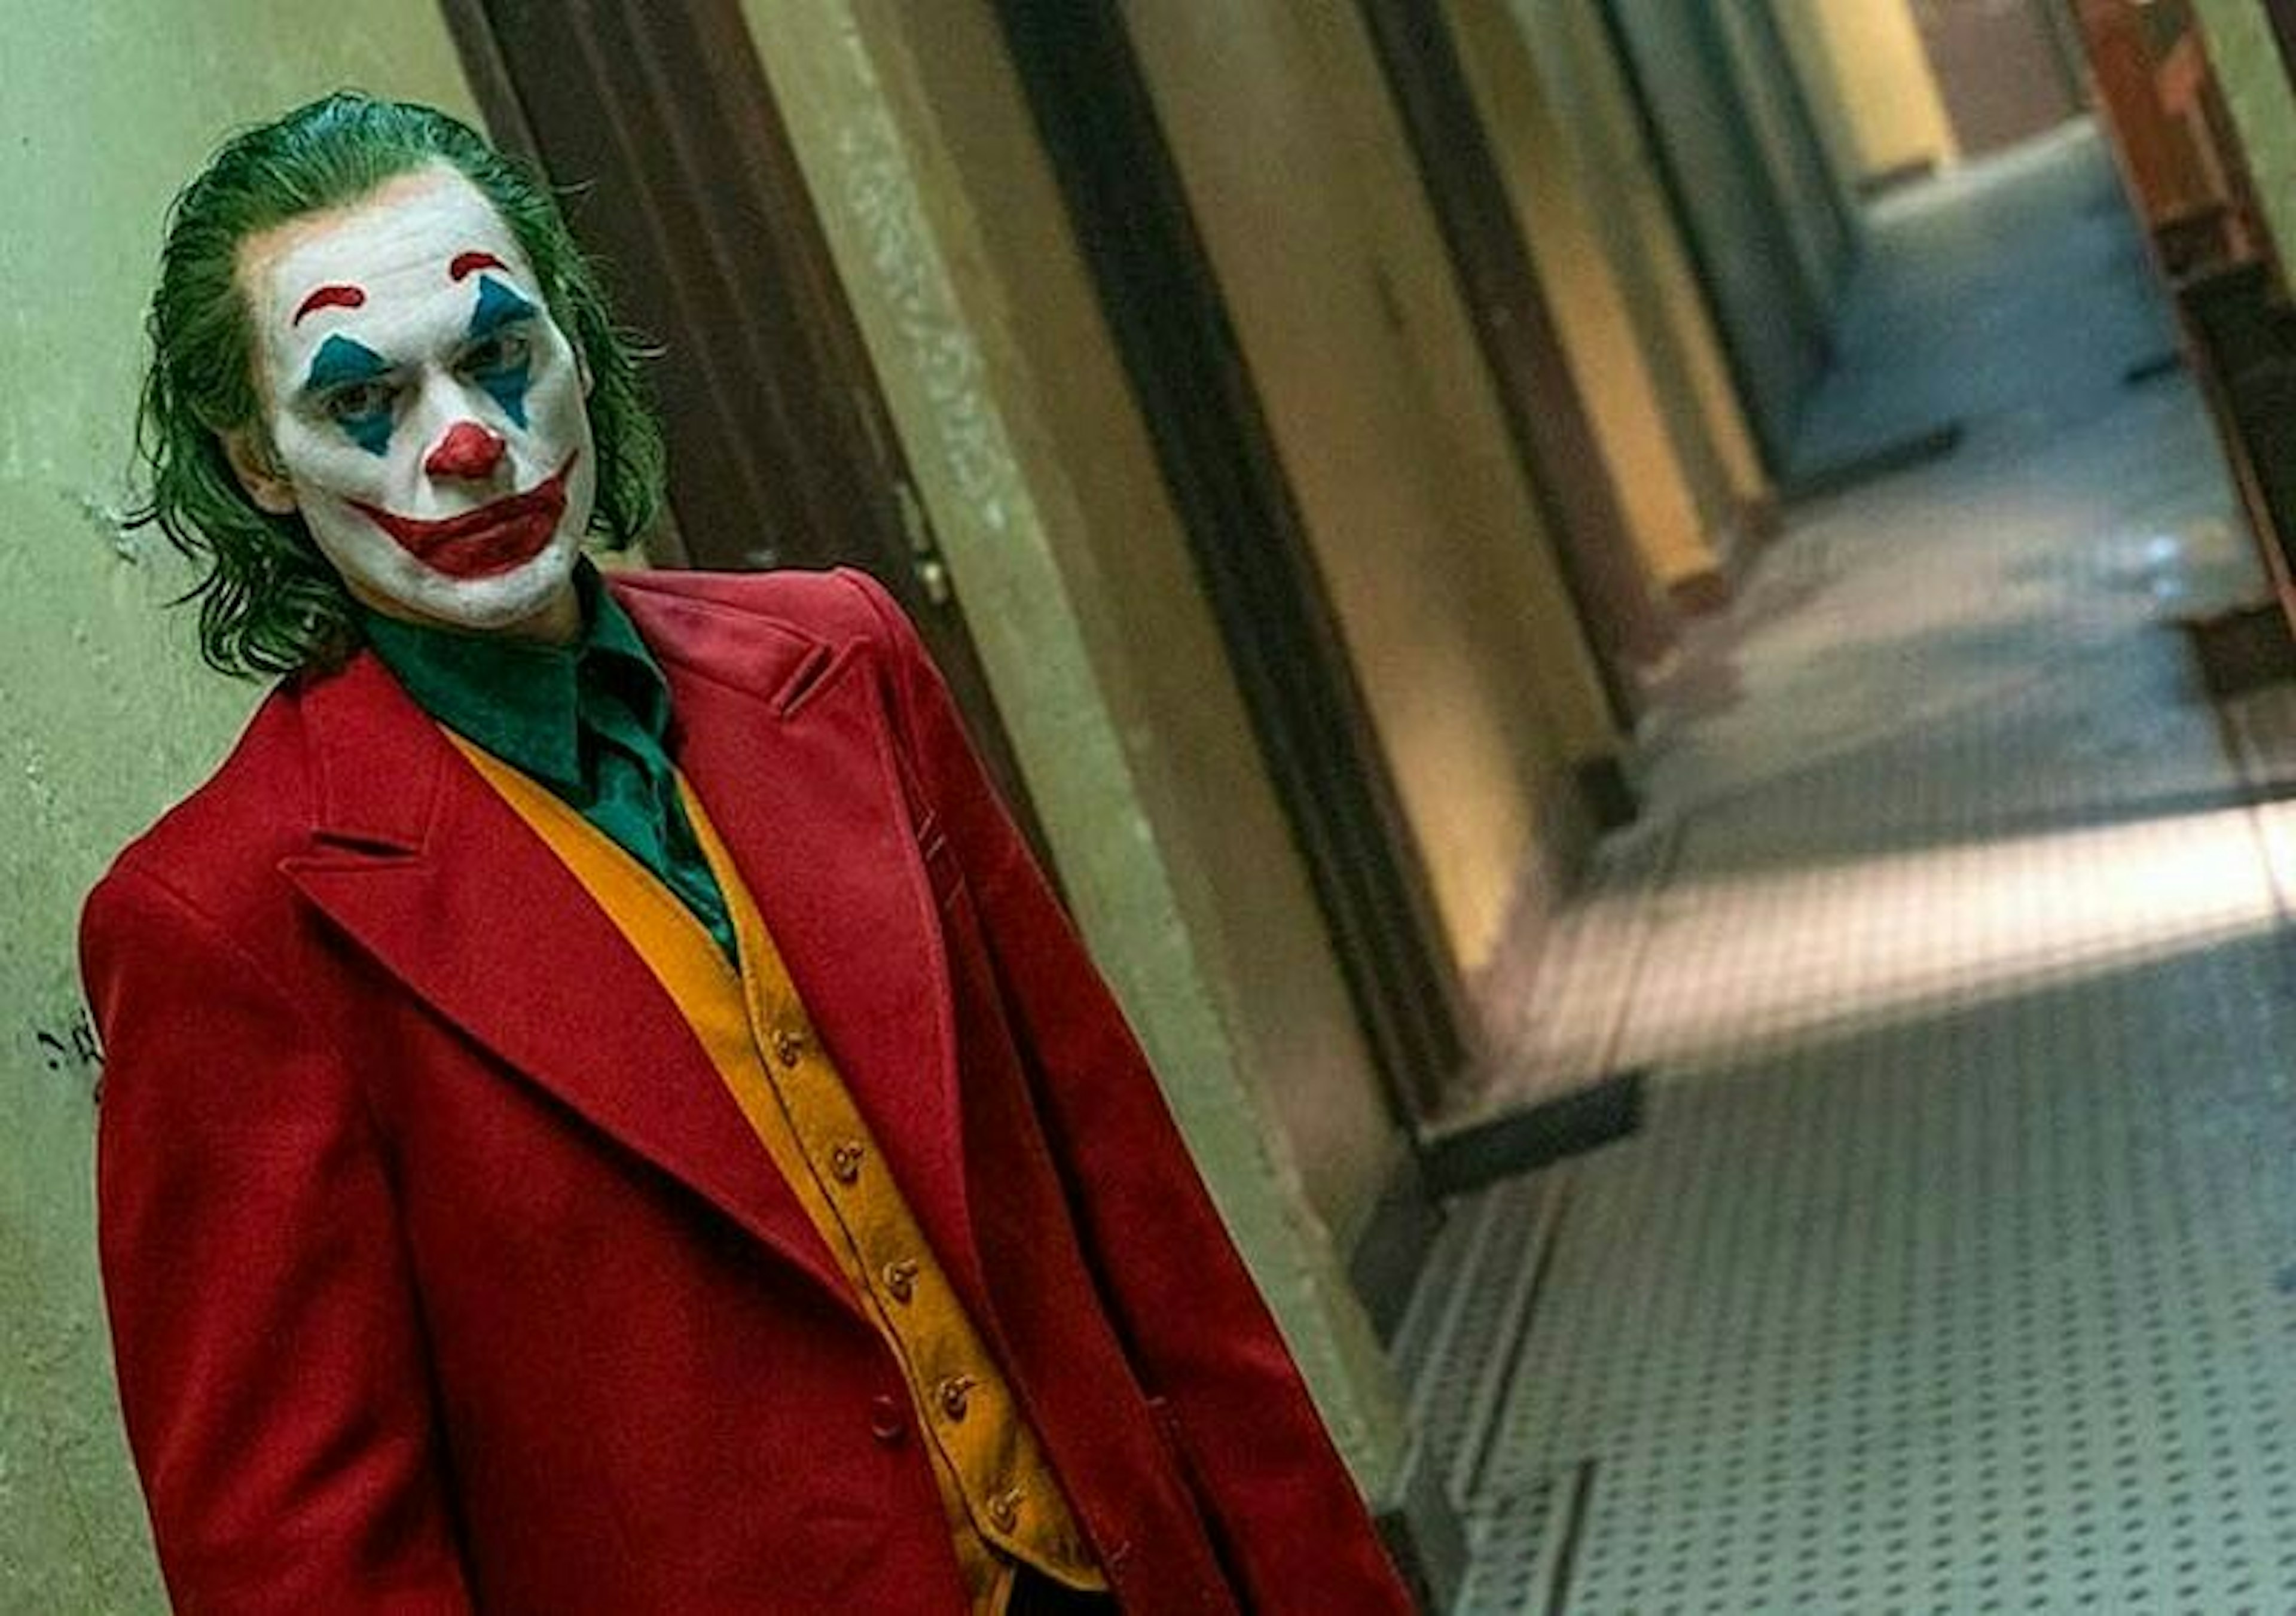 "Arcydzieło, które zmieni oblicze kina". Pierwsze recenzje Jokera są ultraentuzjastyczne!